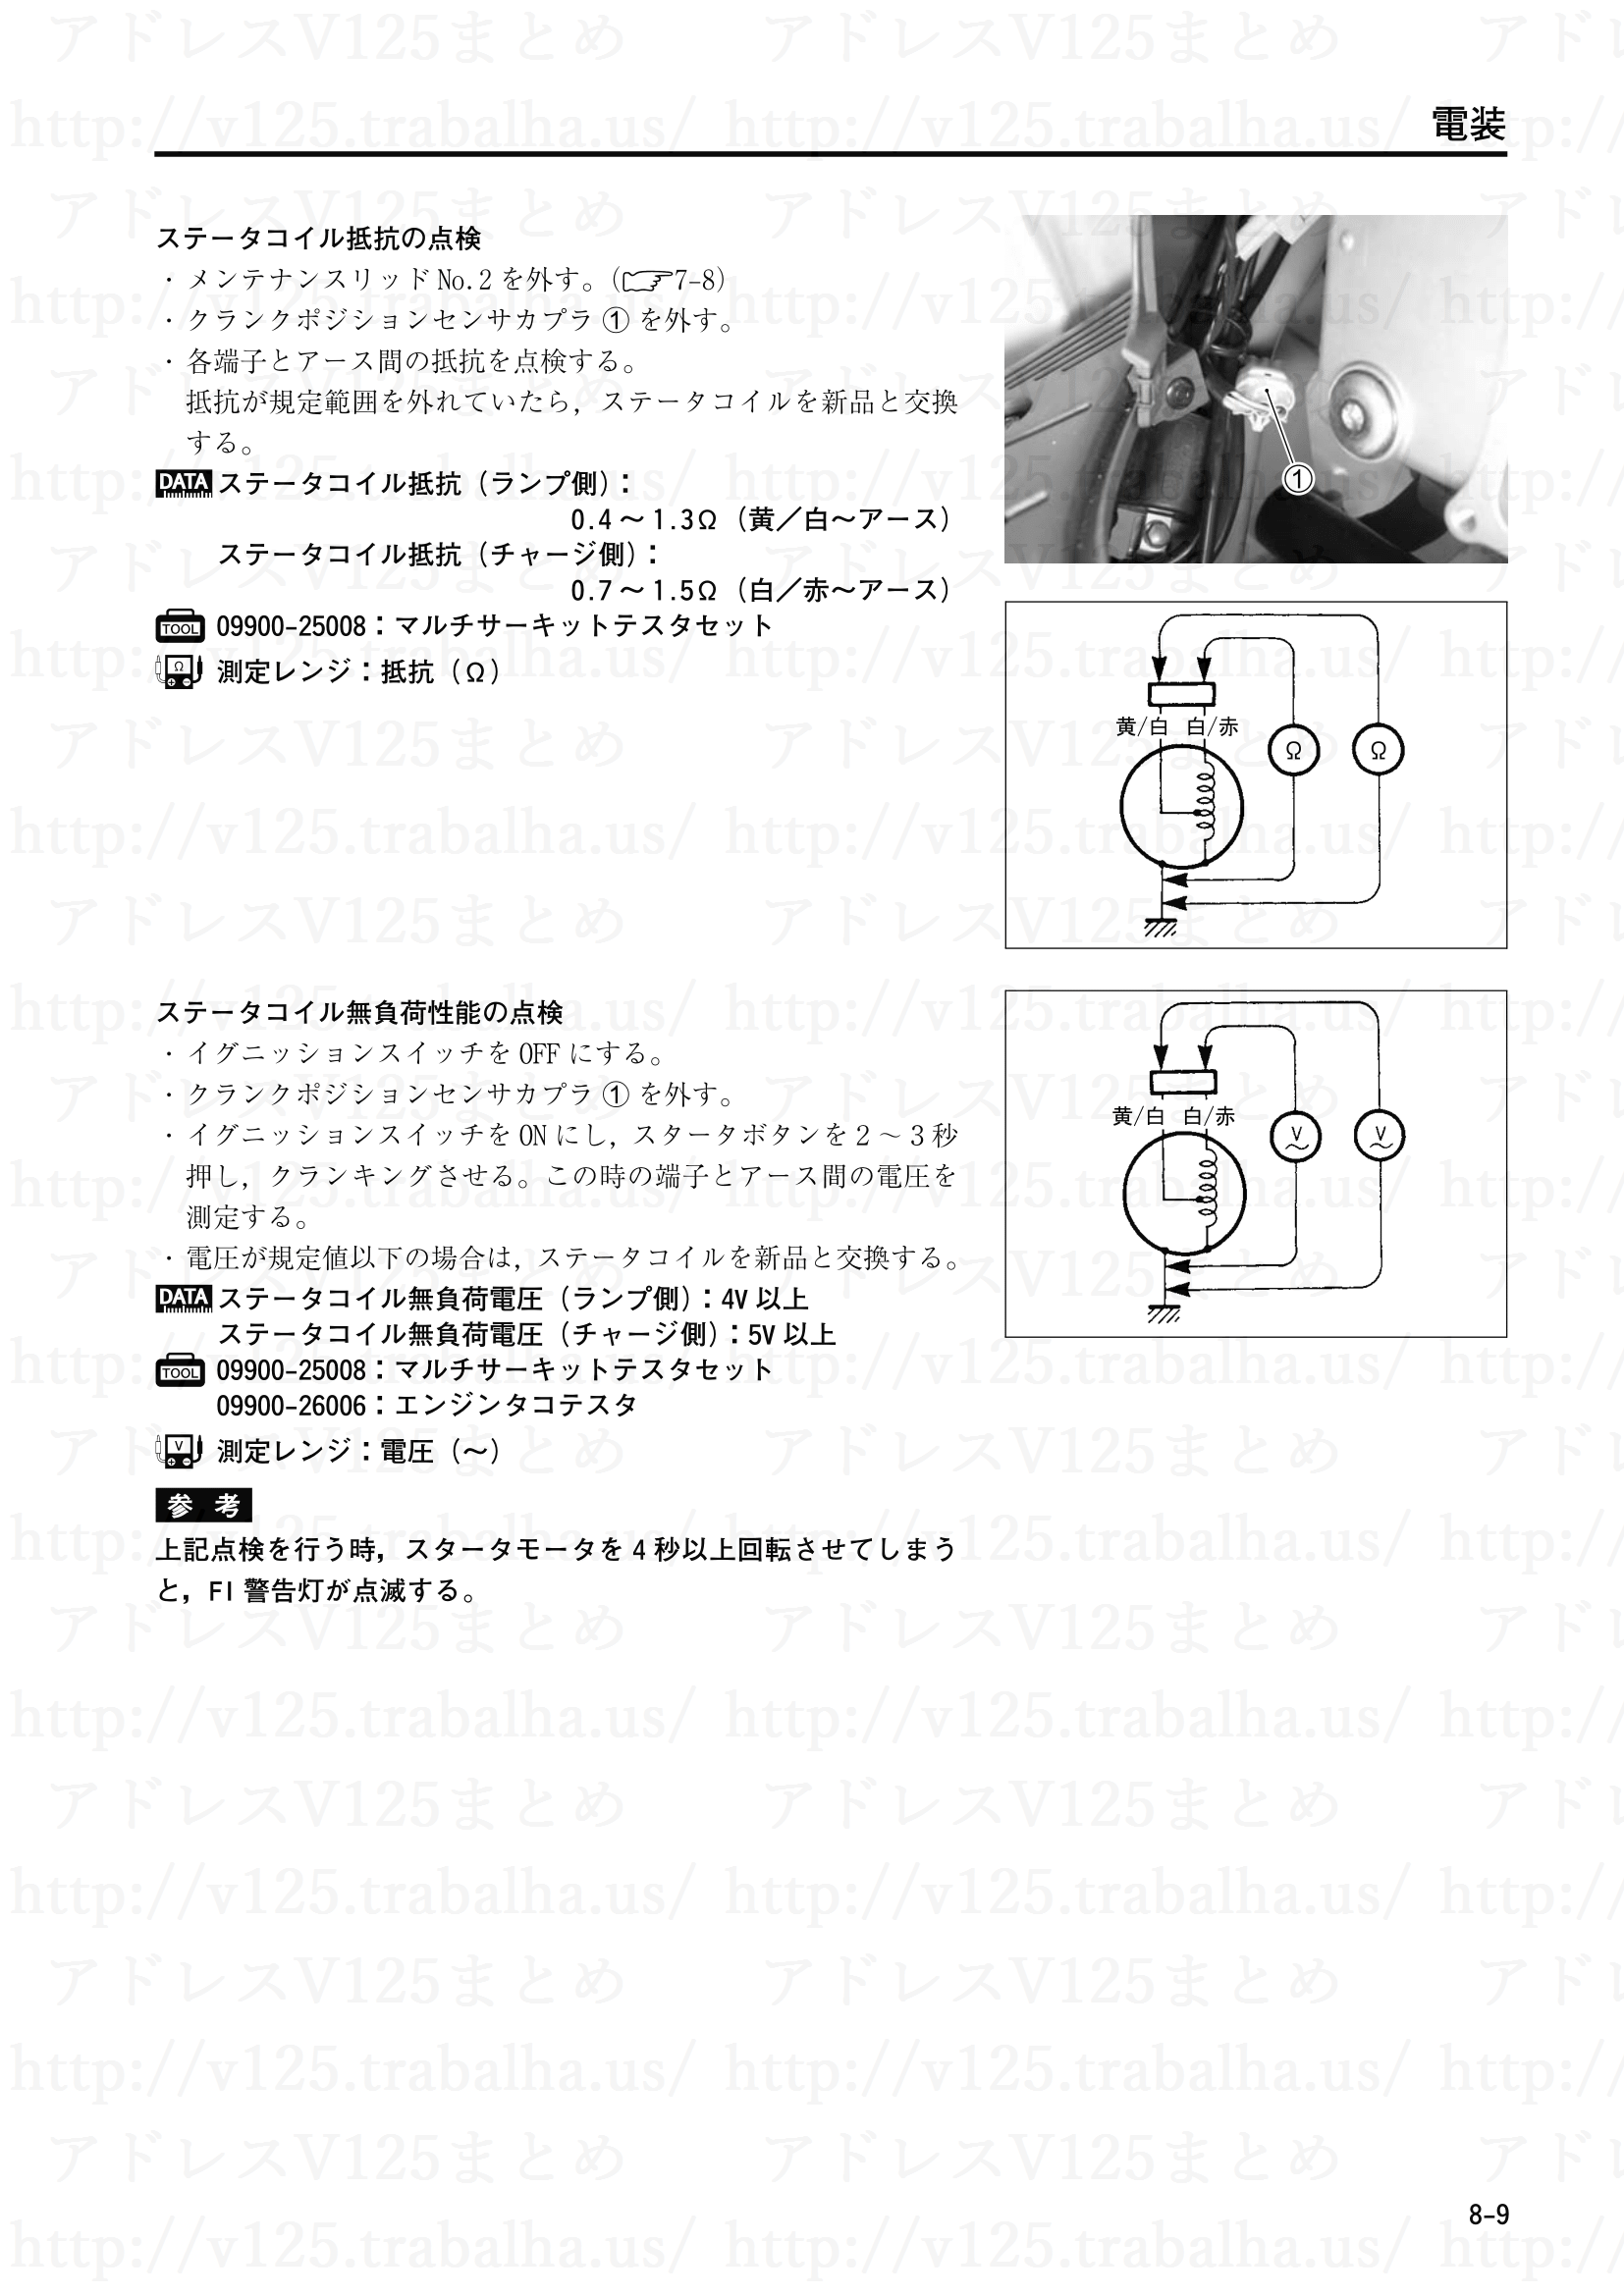 8-9【電装】ステータコイル抵抗の点検